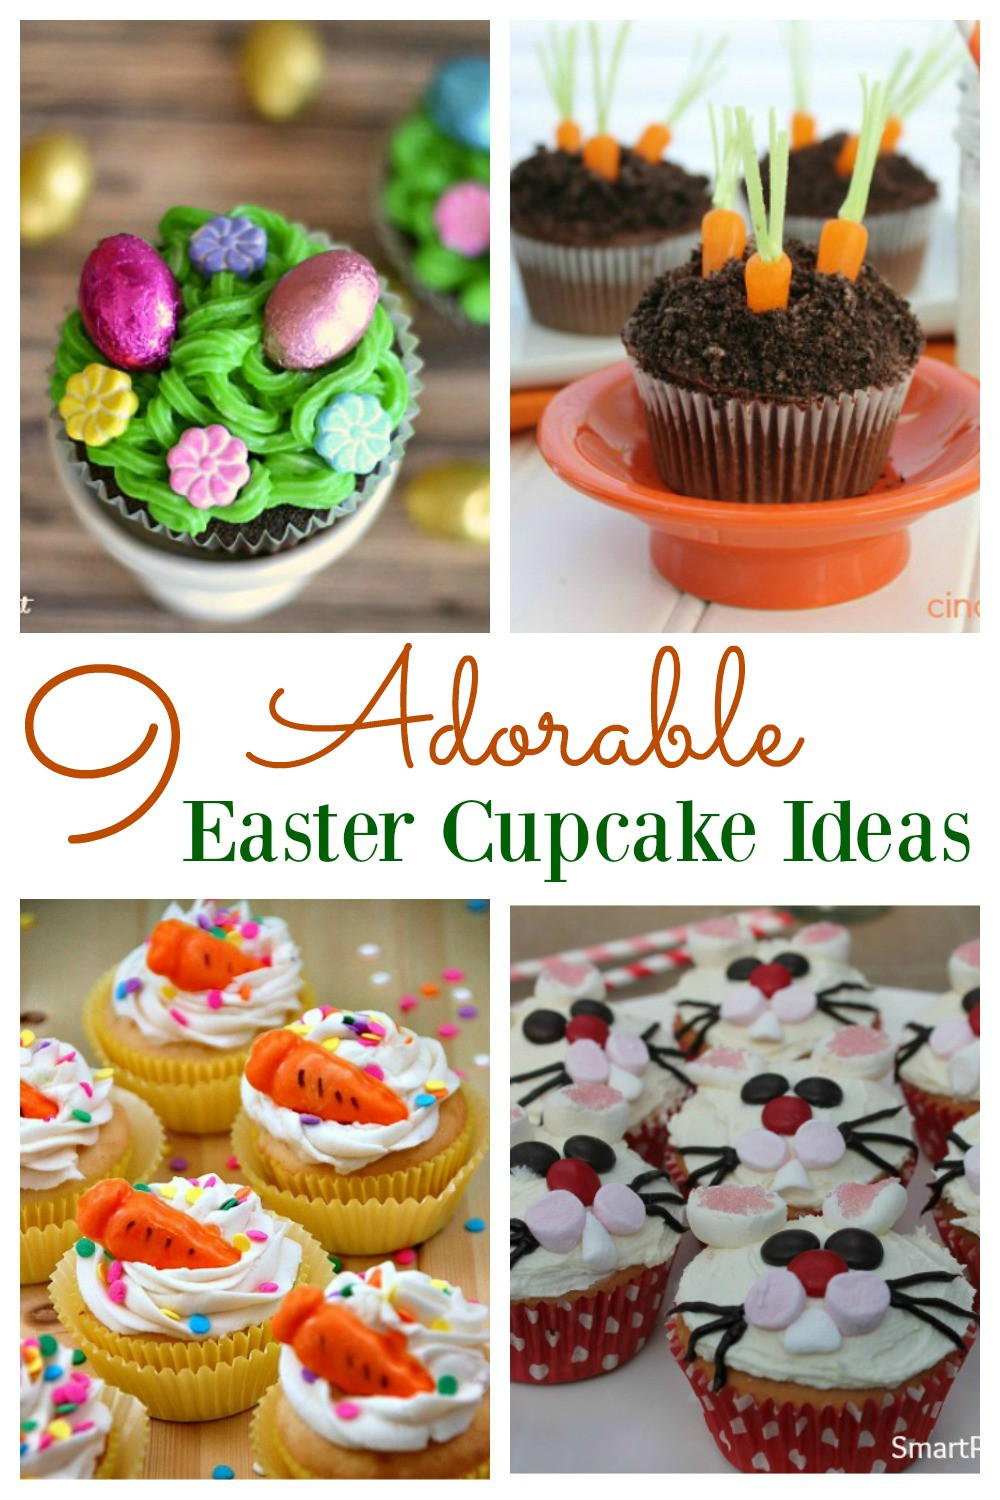 Easter Cupcakes Ideas
 9 Adorable Easter Cupcake Ideas